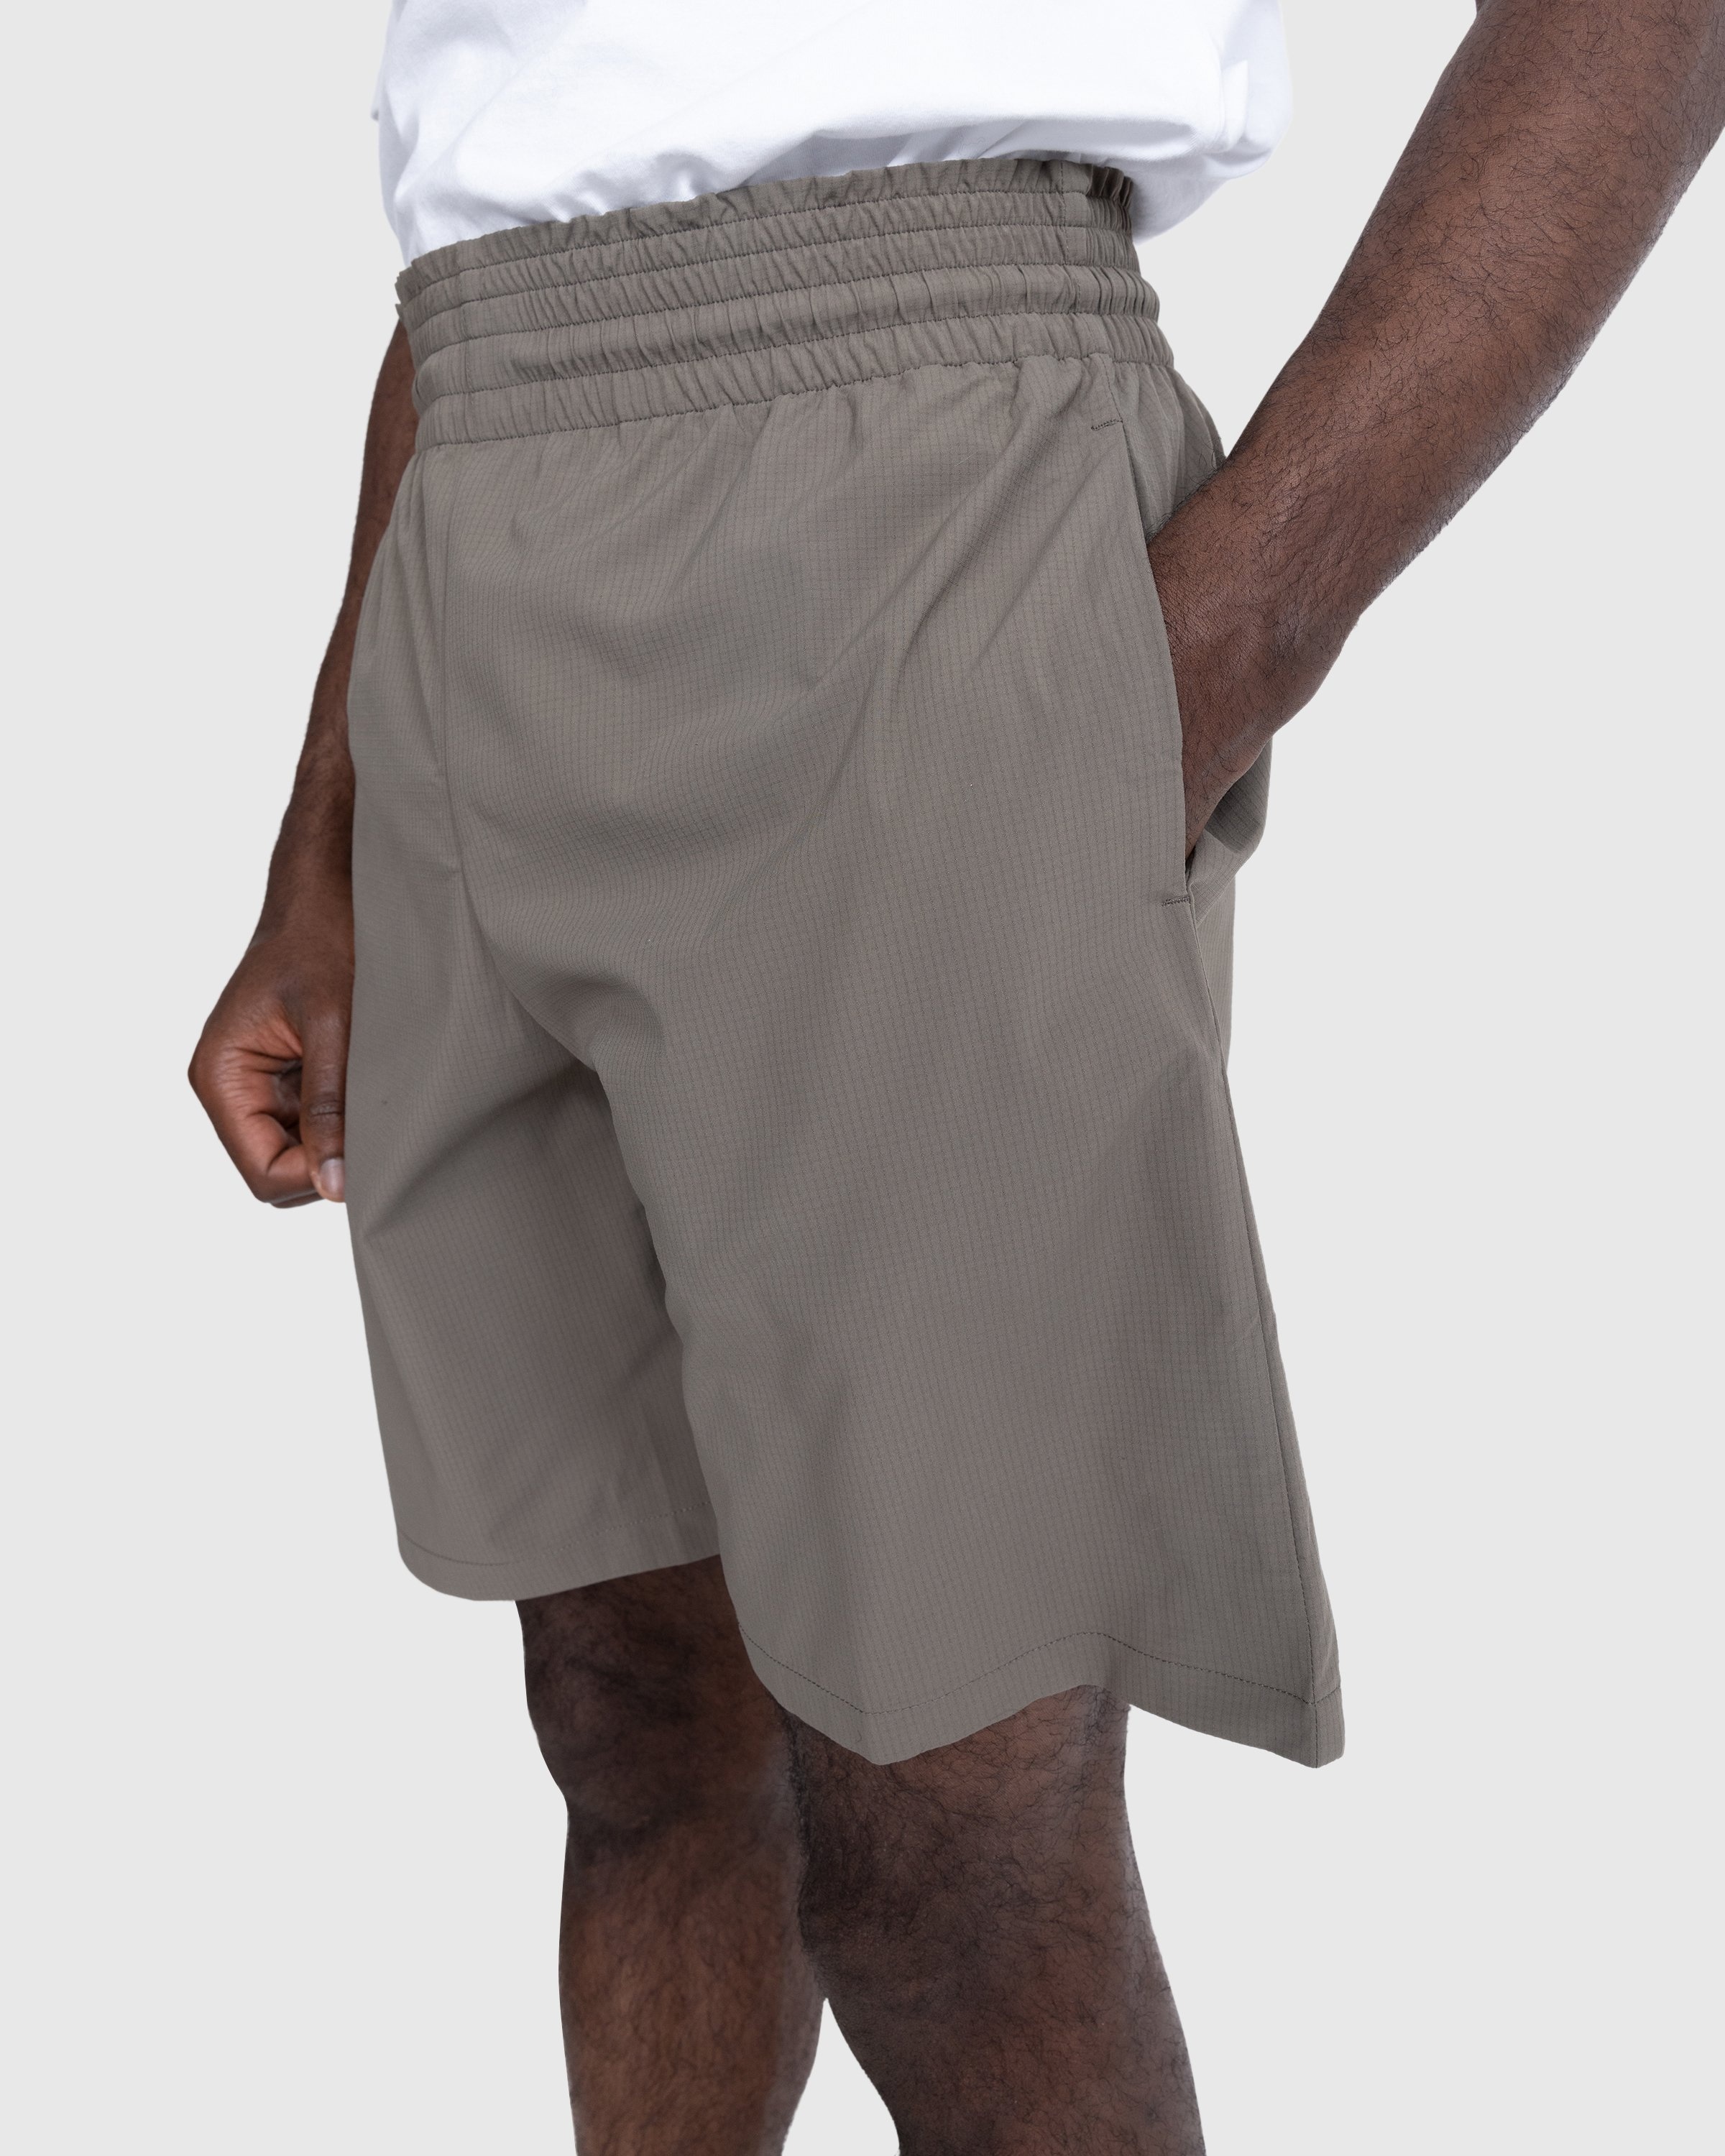 Acne Studios – Embroidered Swim Shorts Mud Grey - Shorts - Beige - Image 5